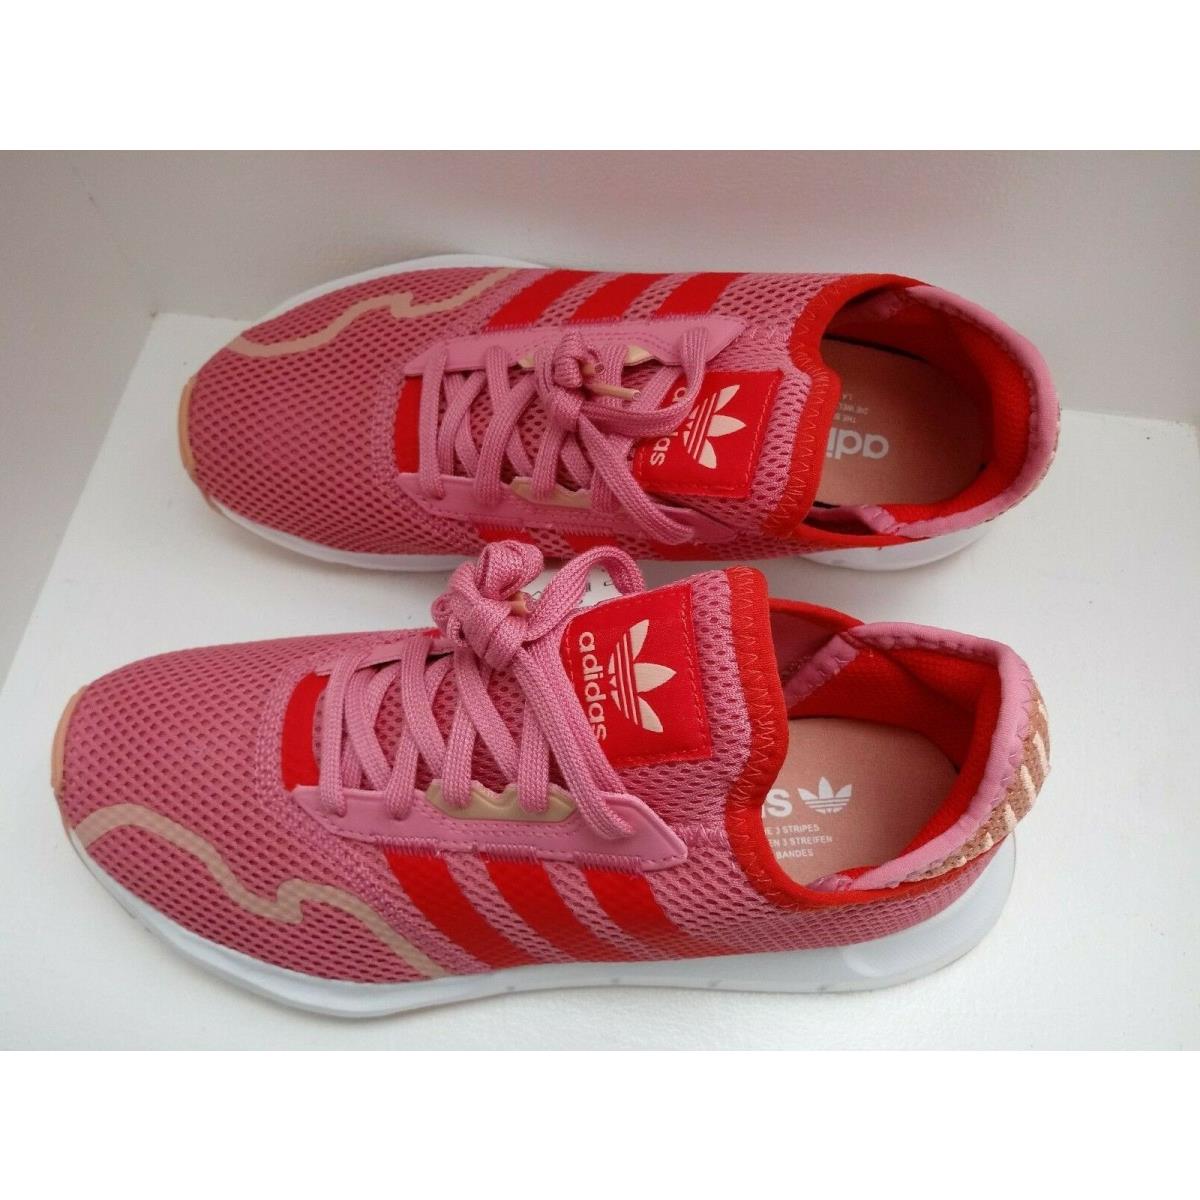 Adidas shoes  - ROSTON/AMBLUS/RED 7